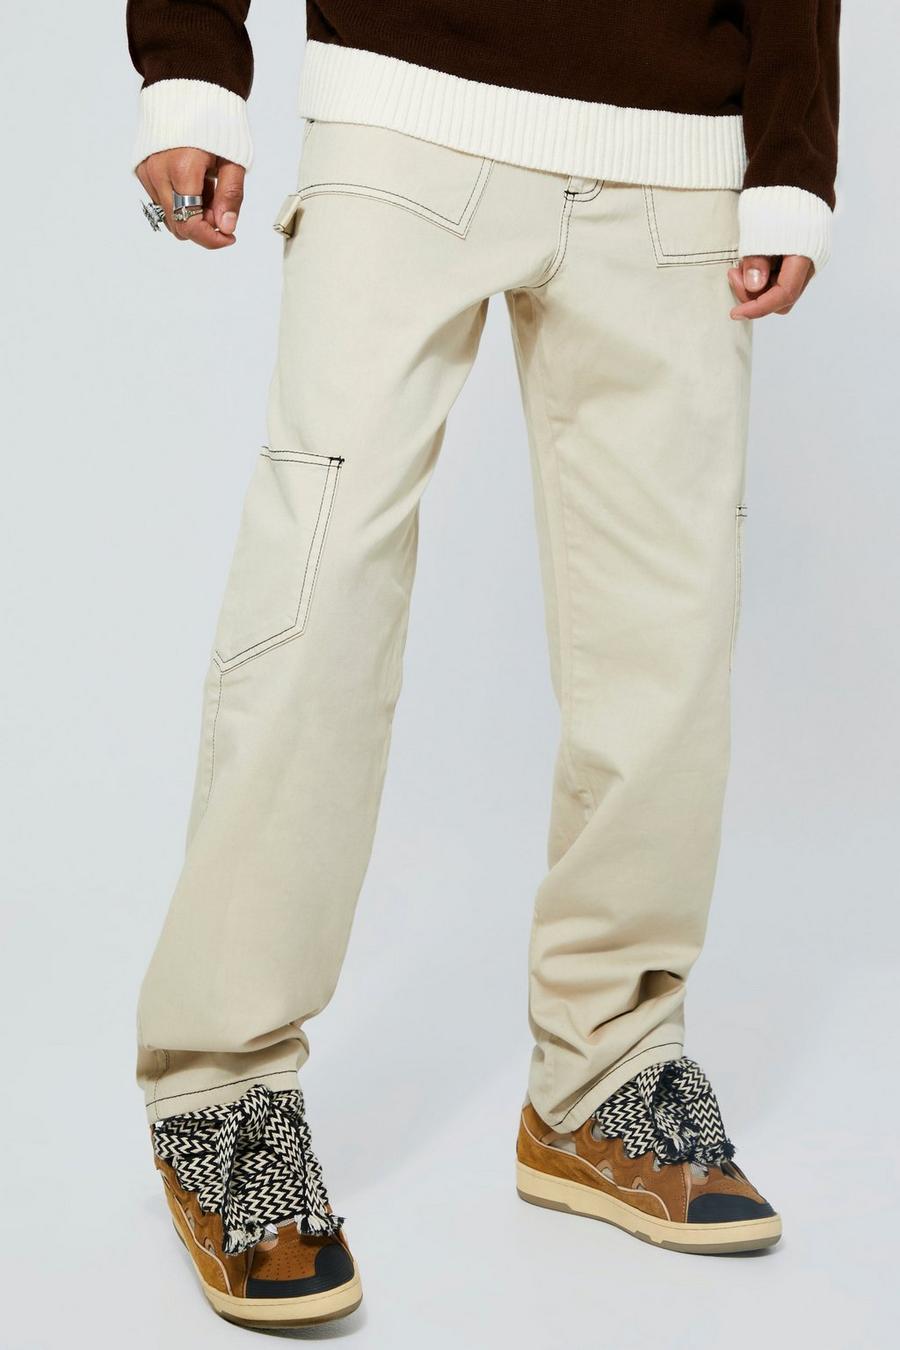 Pantaloni Cargo Tall slavati in taglio rilassato stile Carpenter, Ecru white